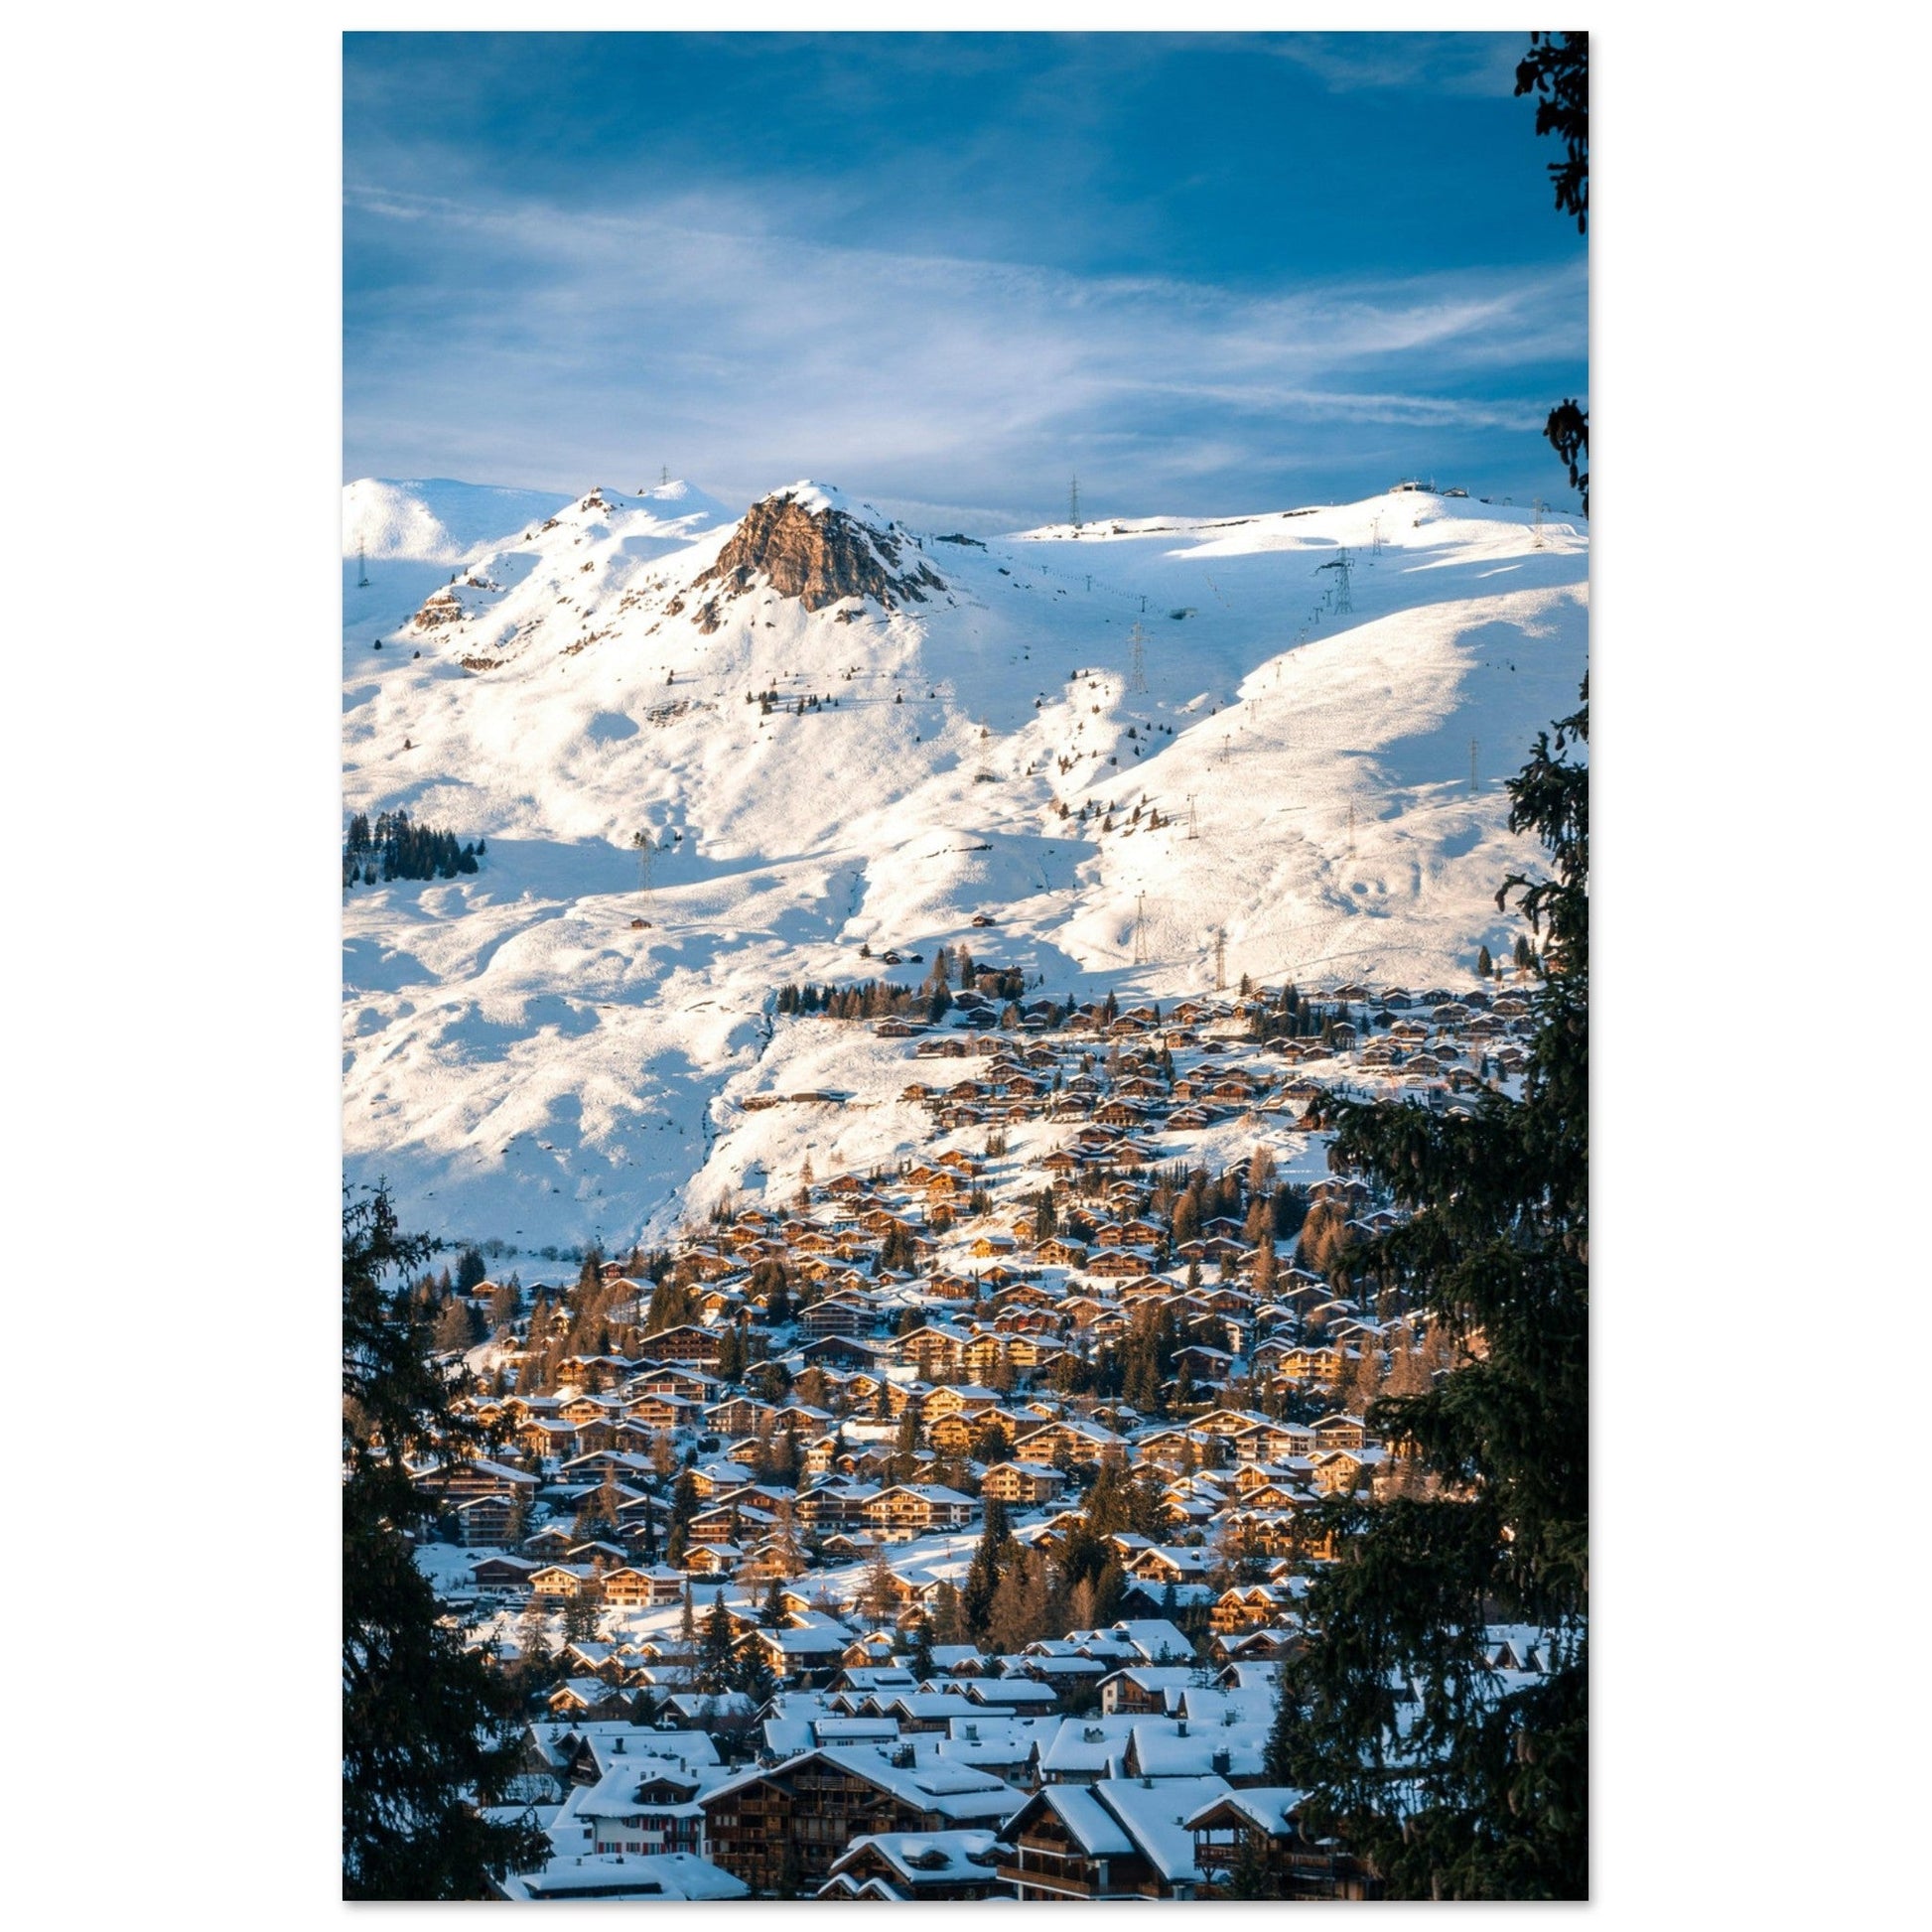 Vente Photo du domaine skiable de Verbier en hiver, Suisse #1 - Tableau photo alu montagne